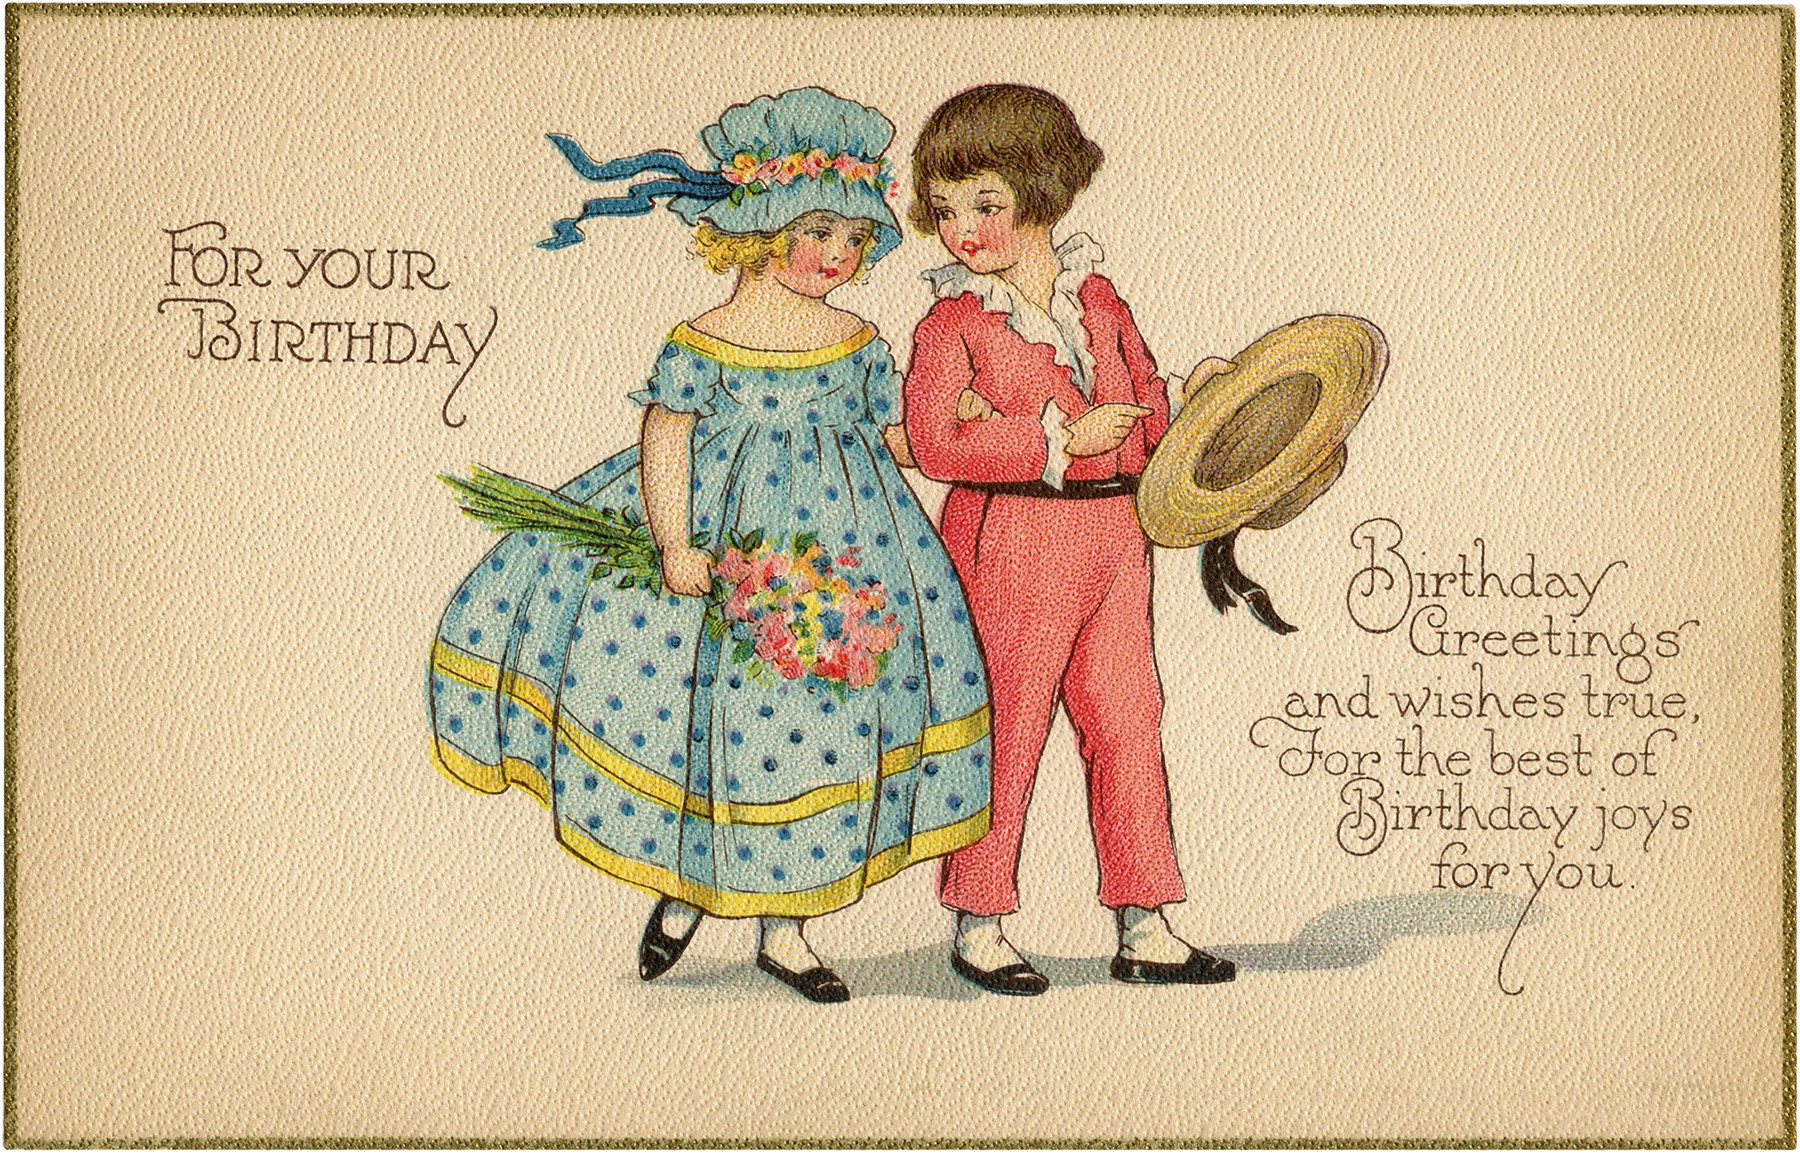 Retro Birthday Cards
 Vintage Birthday Card Image